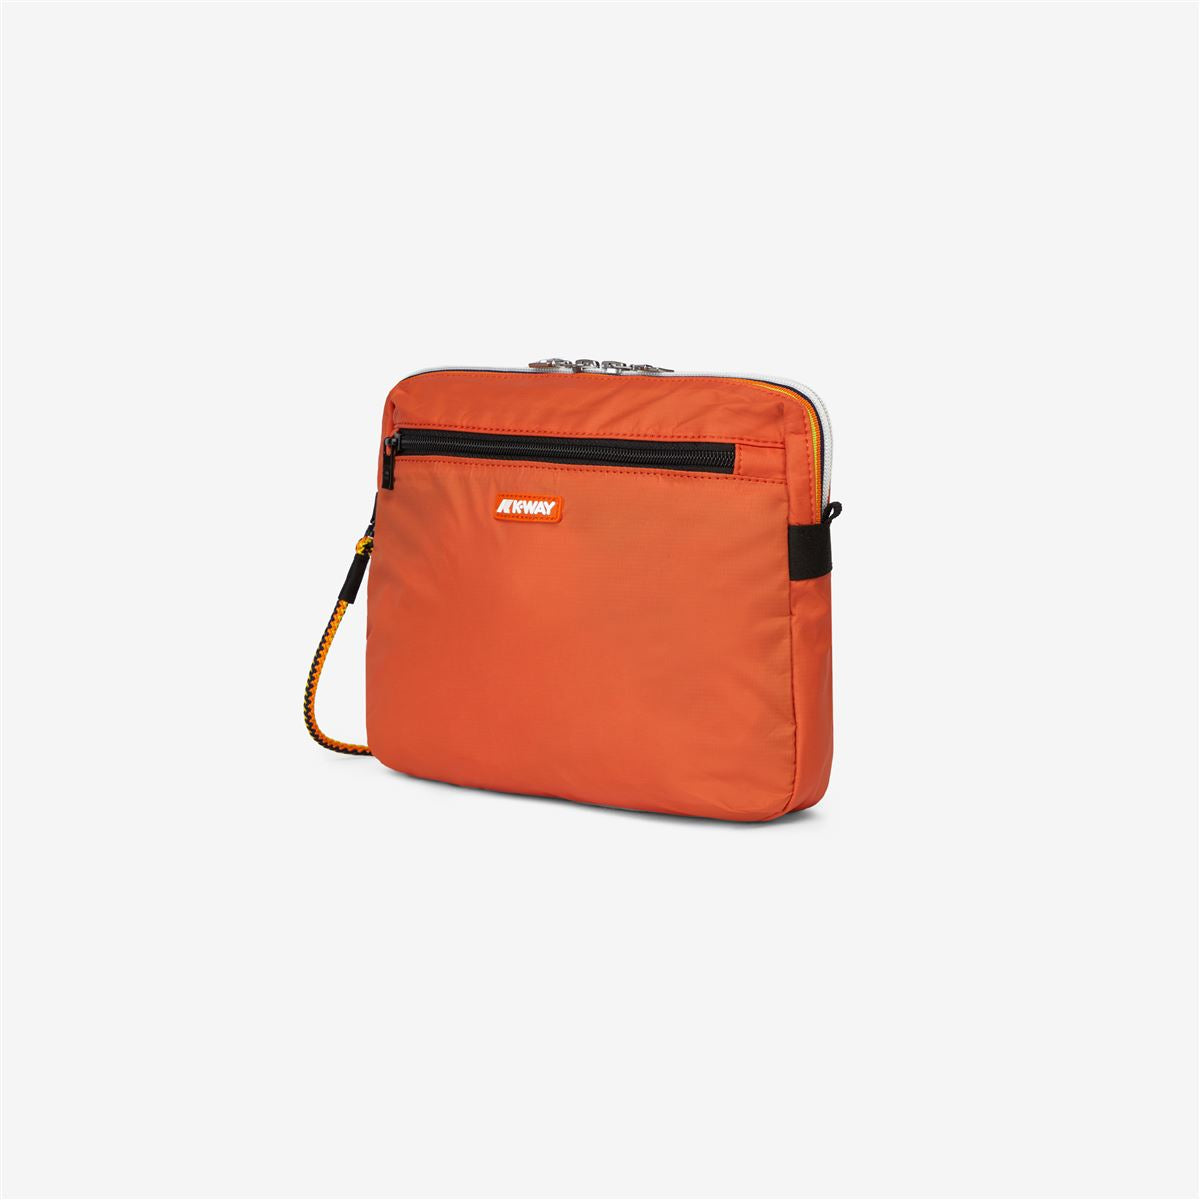 MERAL - Bag - Nylon - Unisex - Orange Rust